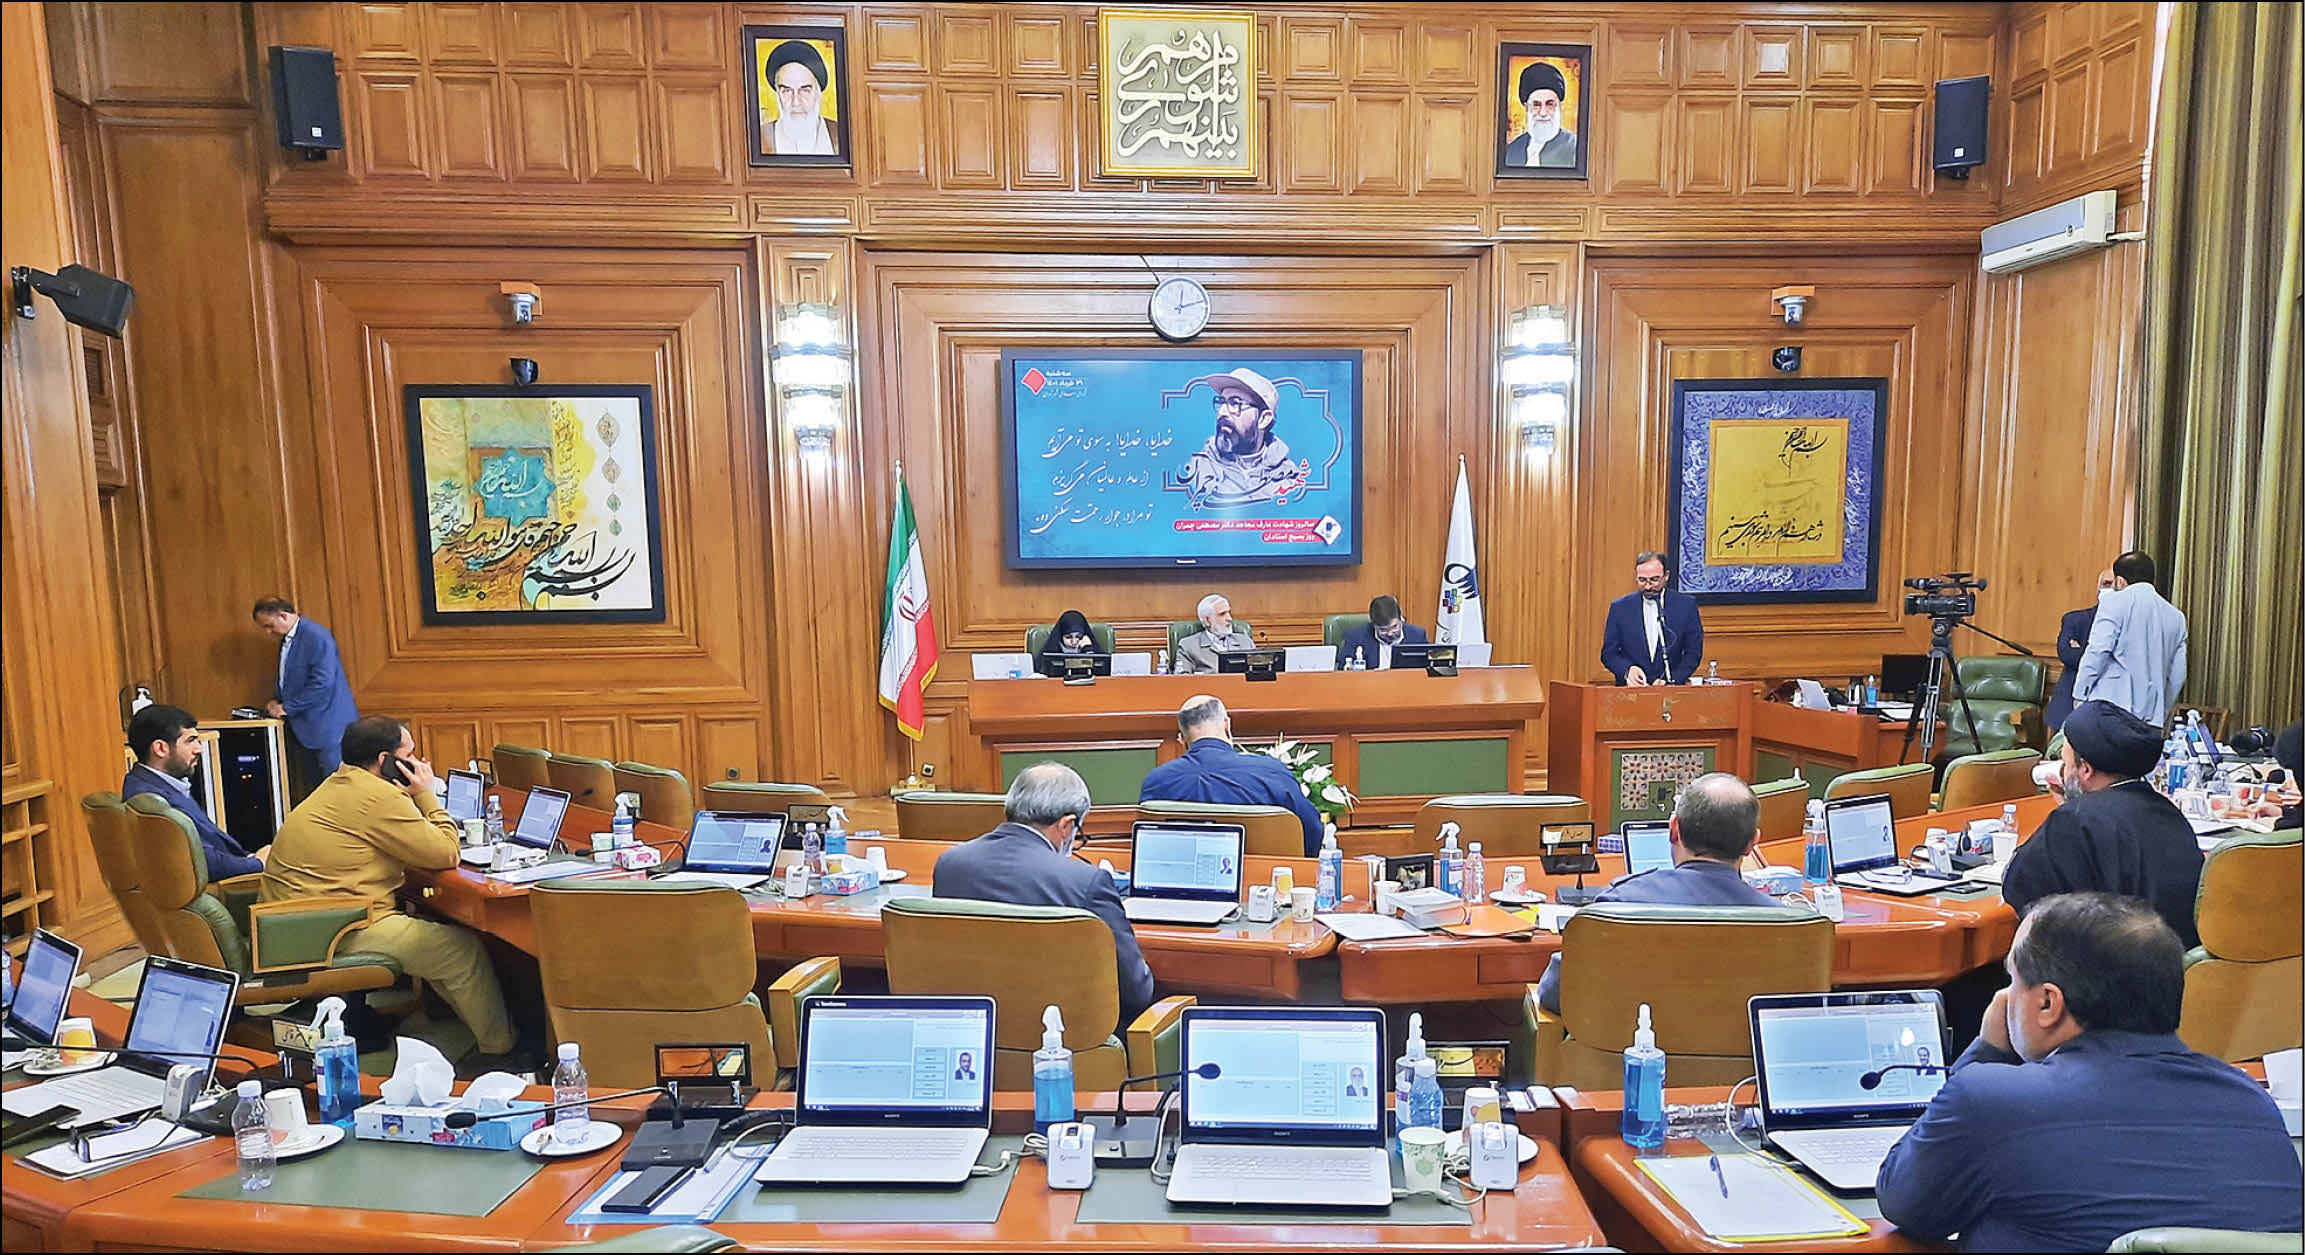 معاون امور اجتماعی و فرهنگی شهردار تهران در صحن پارلمان شهری اقدامات قرارگاه اجتماعی را تشریح کرد